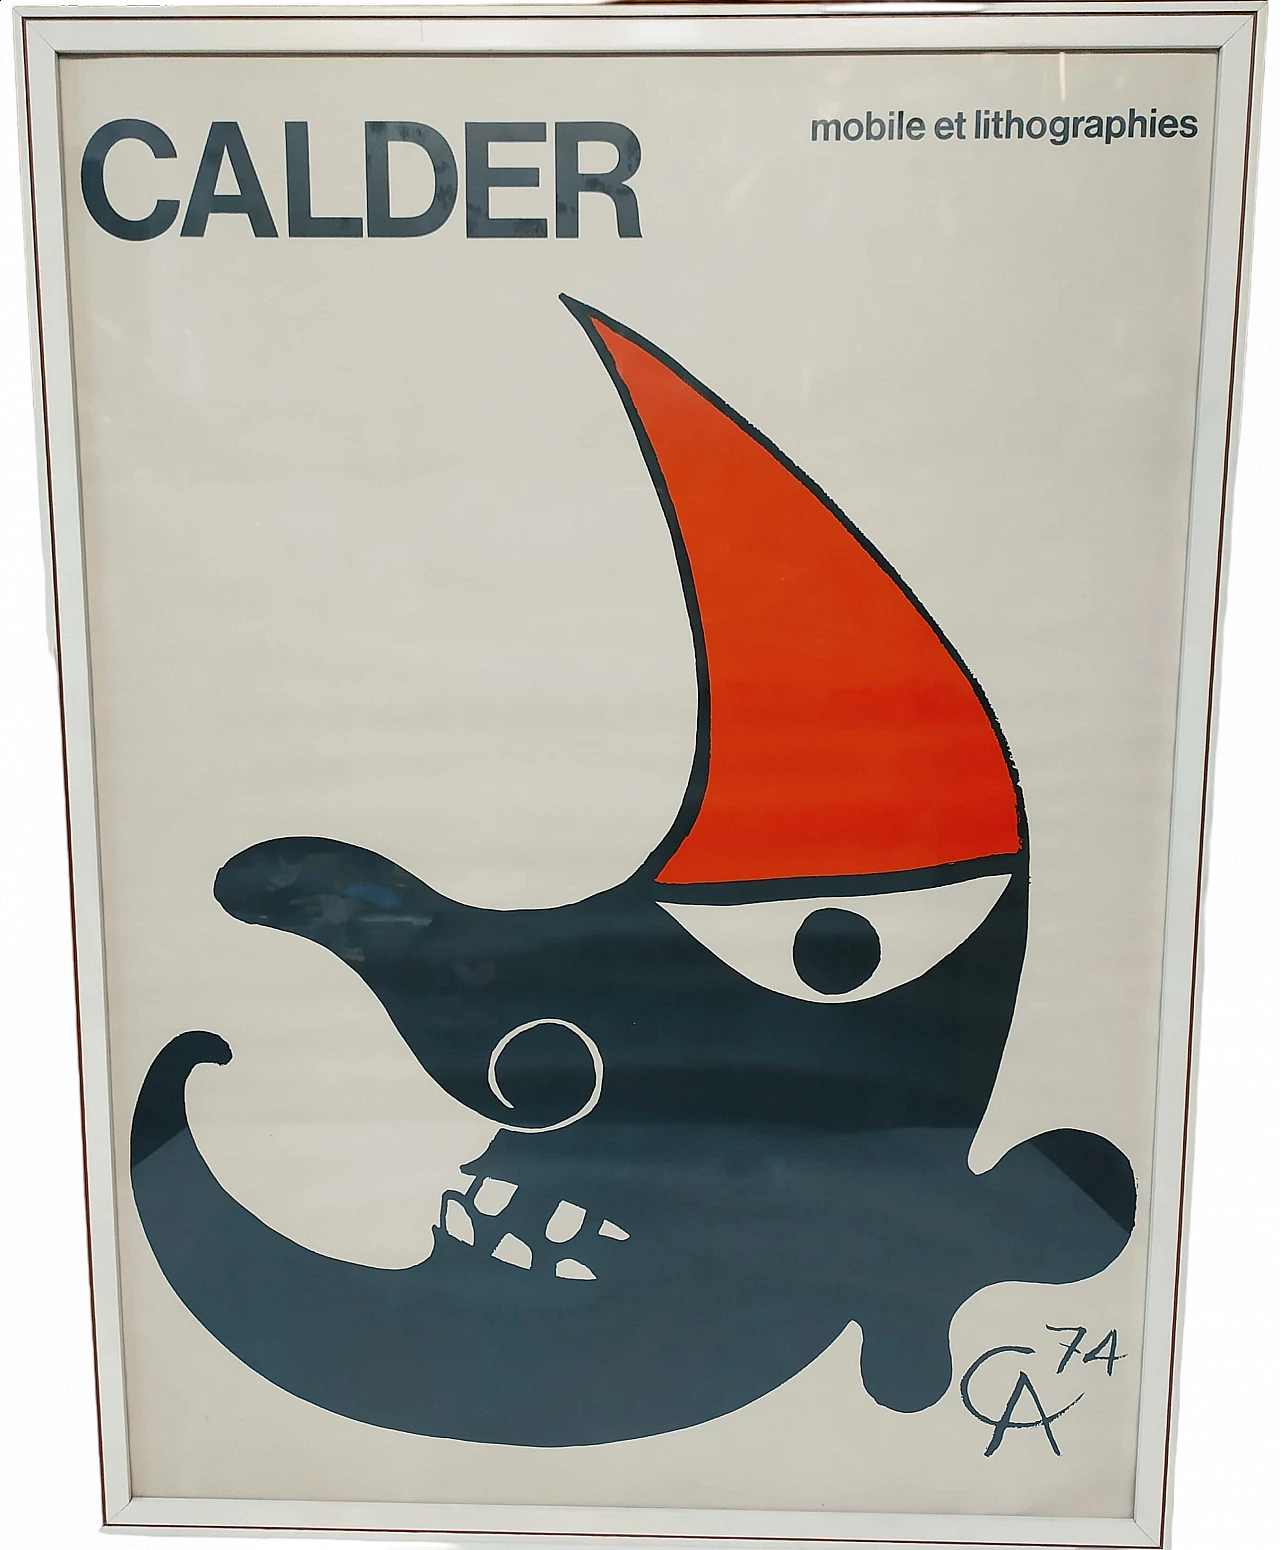 Alexander Calder, Mobile et Lithographies, litografia, 1974 5